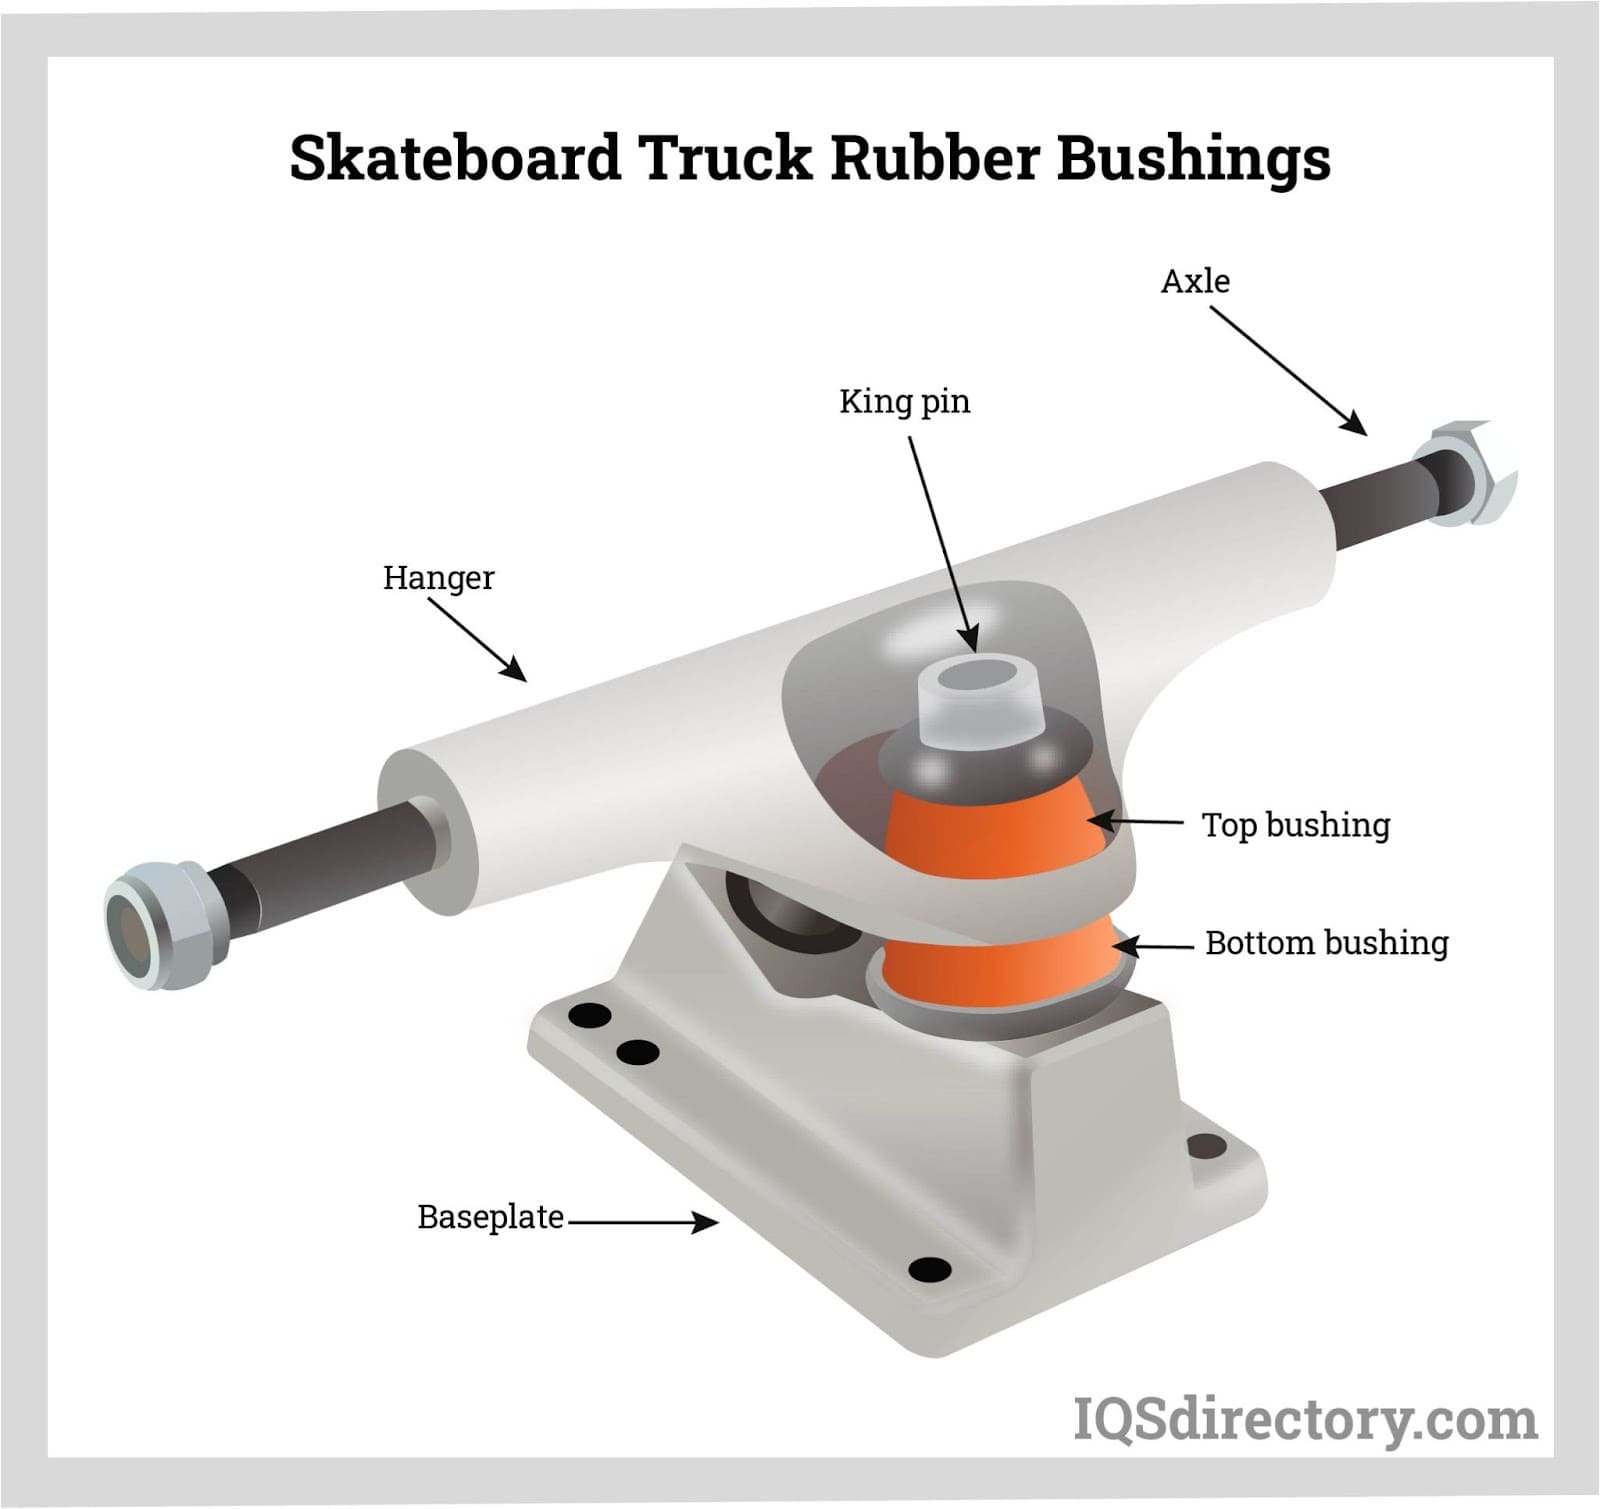 Skateboard Truck Rubber Bushings